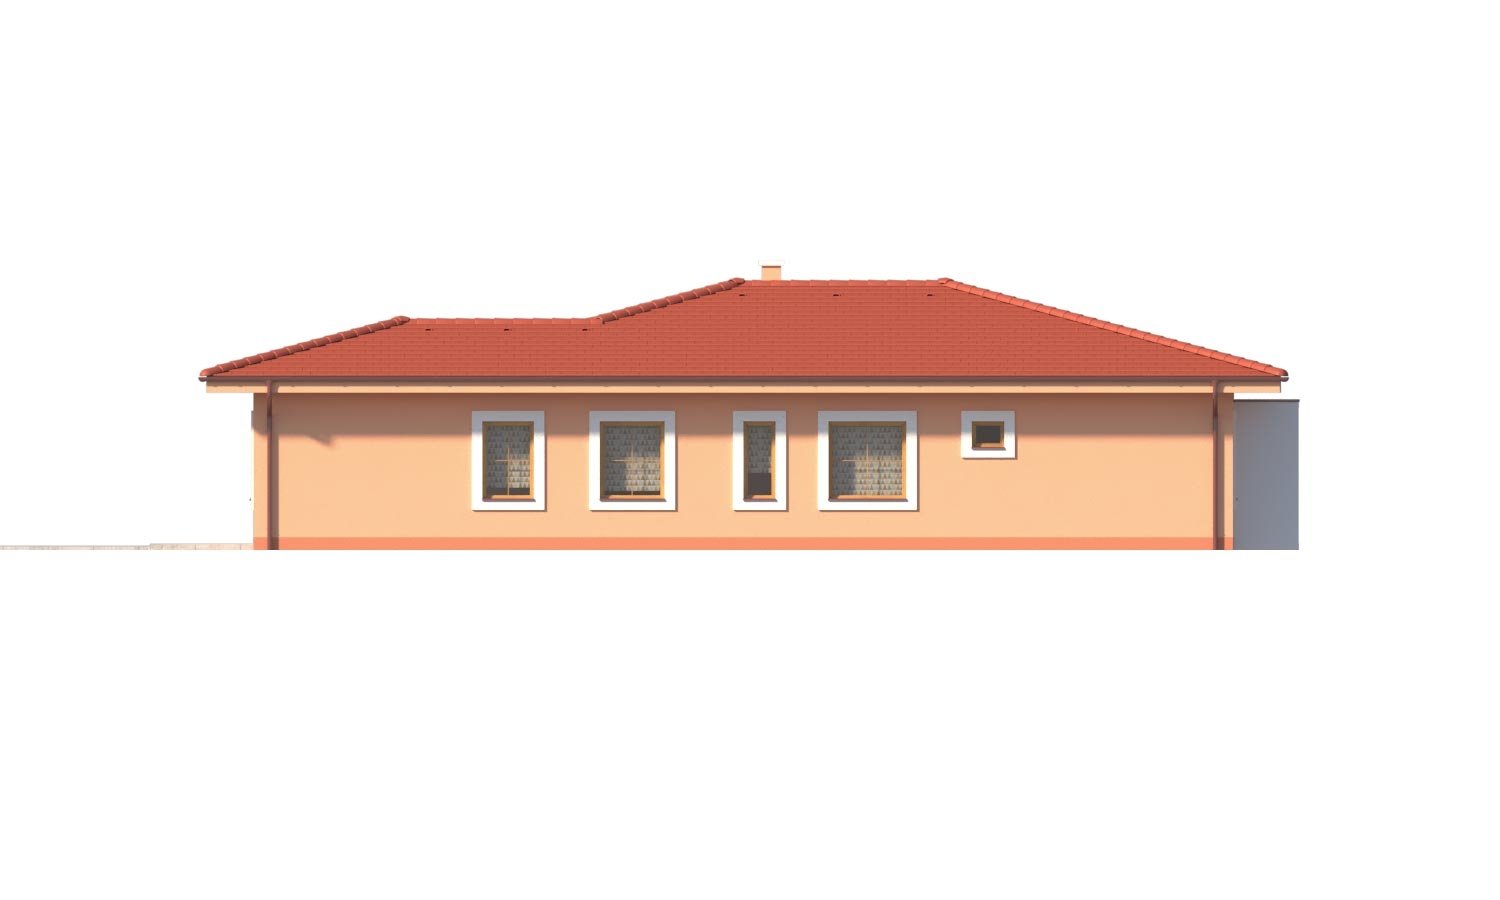 Zrkadlový pohľad 4. - Krásný 5-pokojový zděný bungalov s valbovou střechou a krbem.